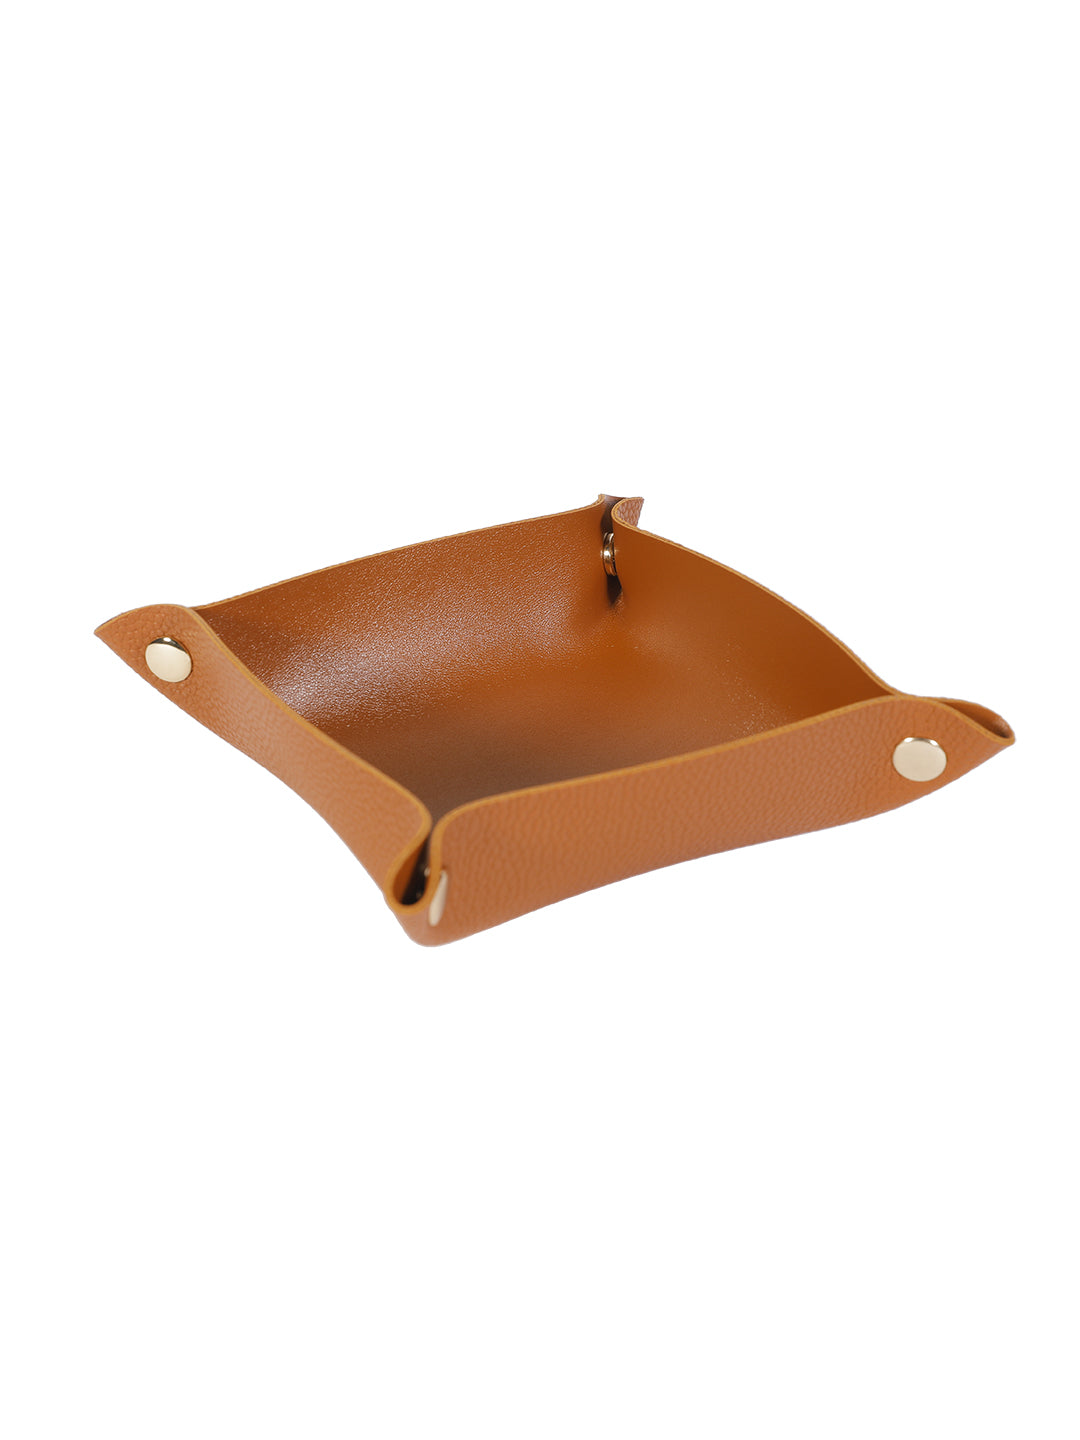 VON CASA Leather Desktop Storage Tray - Brown